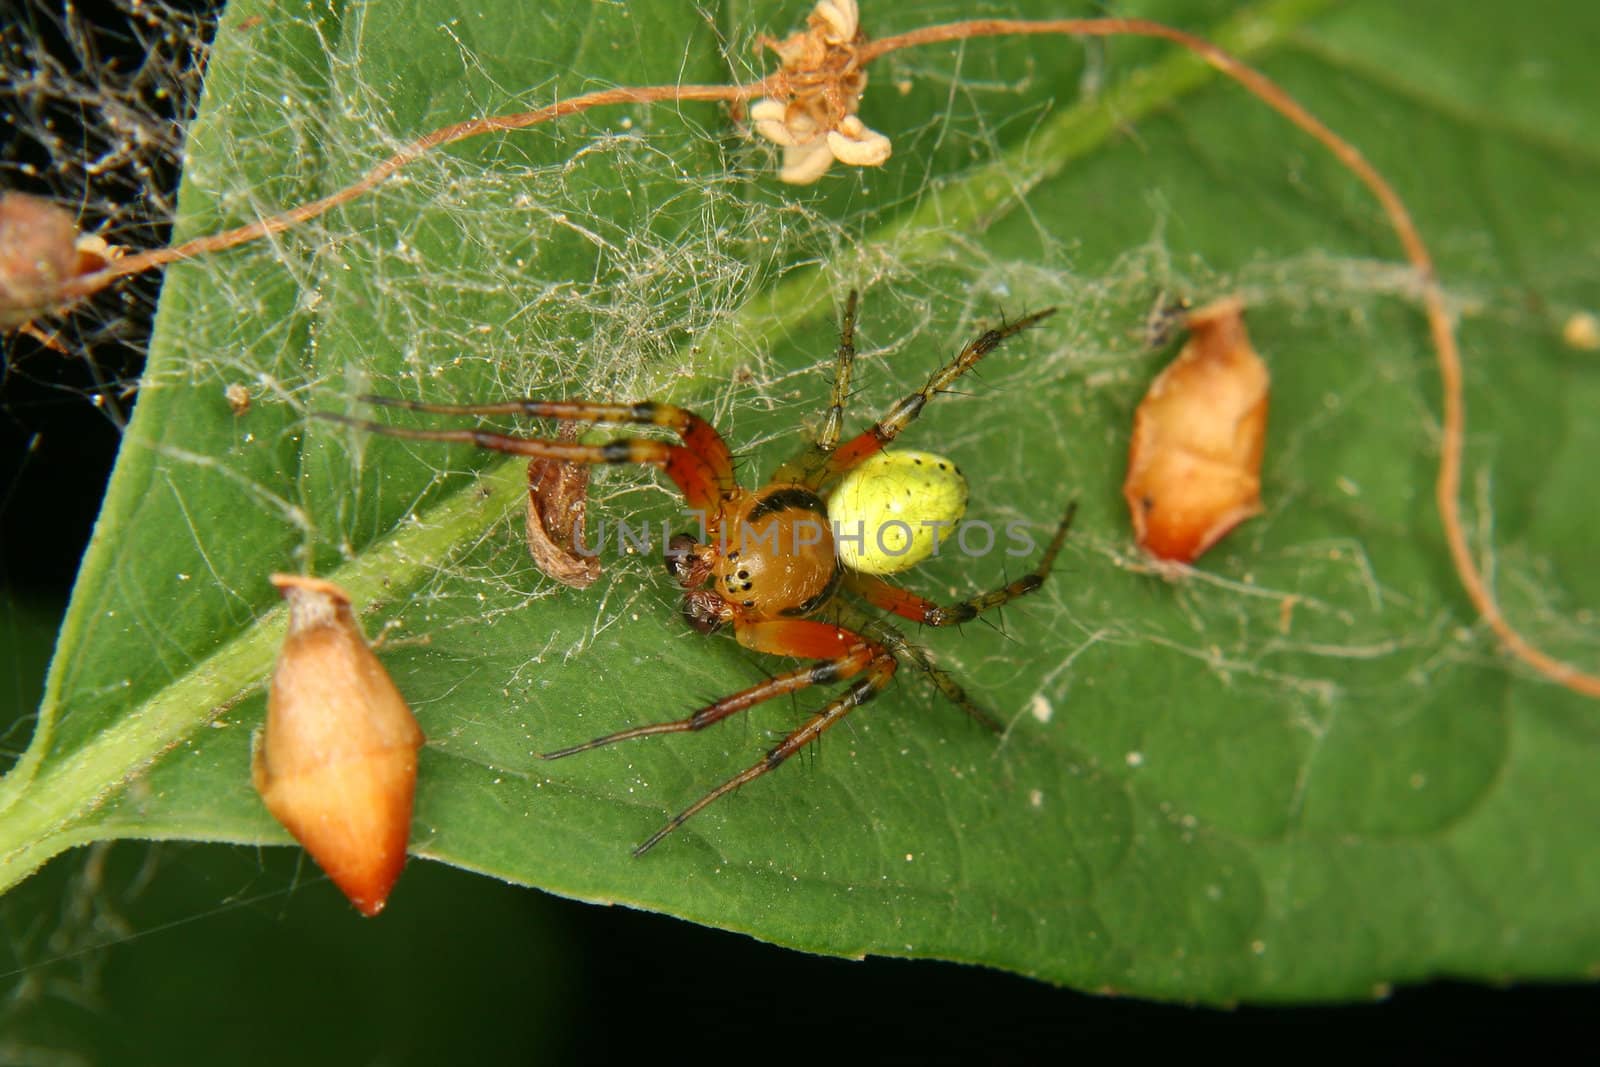 Cucumber green spider (Araniella cucurbitina) - male on a leaf